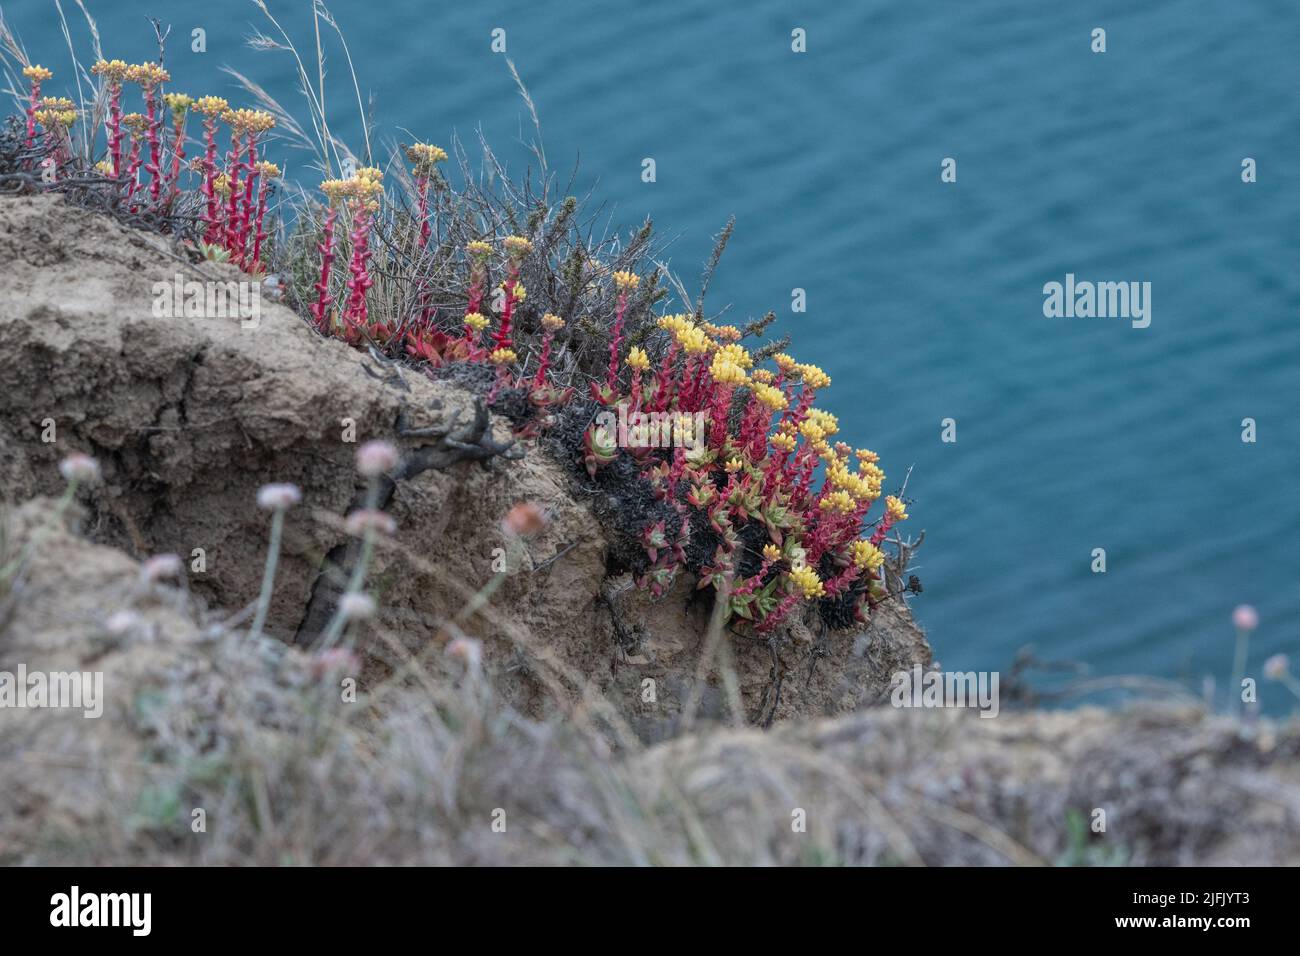 Lechuga salvaje del acantilado (Dudleya farinosa) Una suculenta que produce una hermosa flor salvaje que crece a lo largo de los acantilados costeros sobre el océano Pacífico en California. Foto de stock